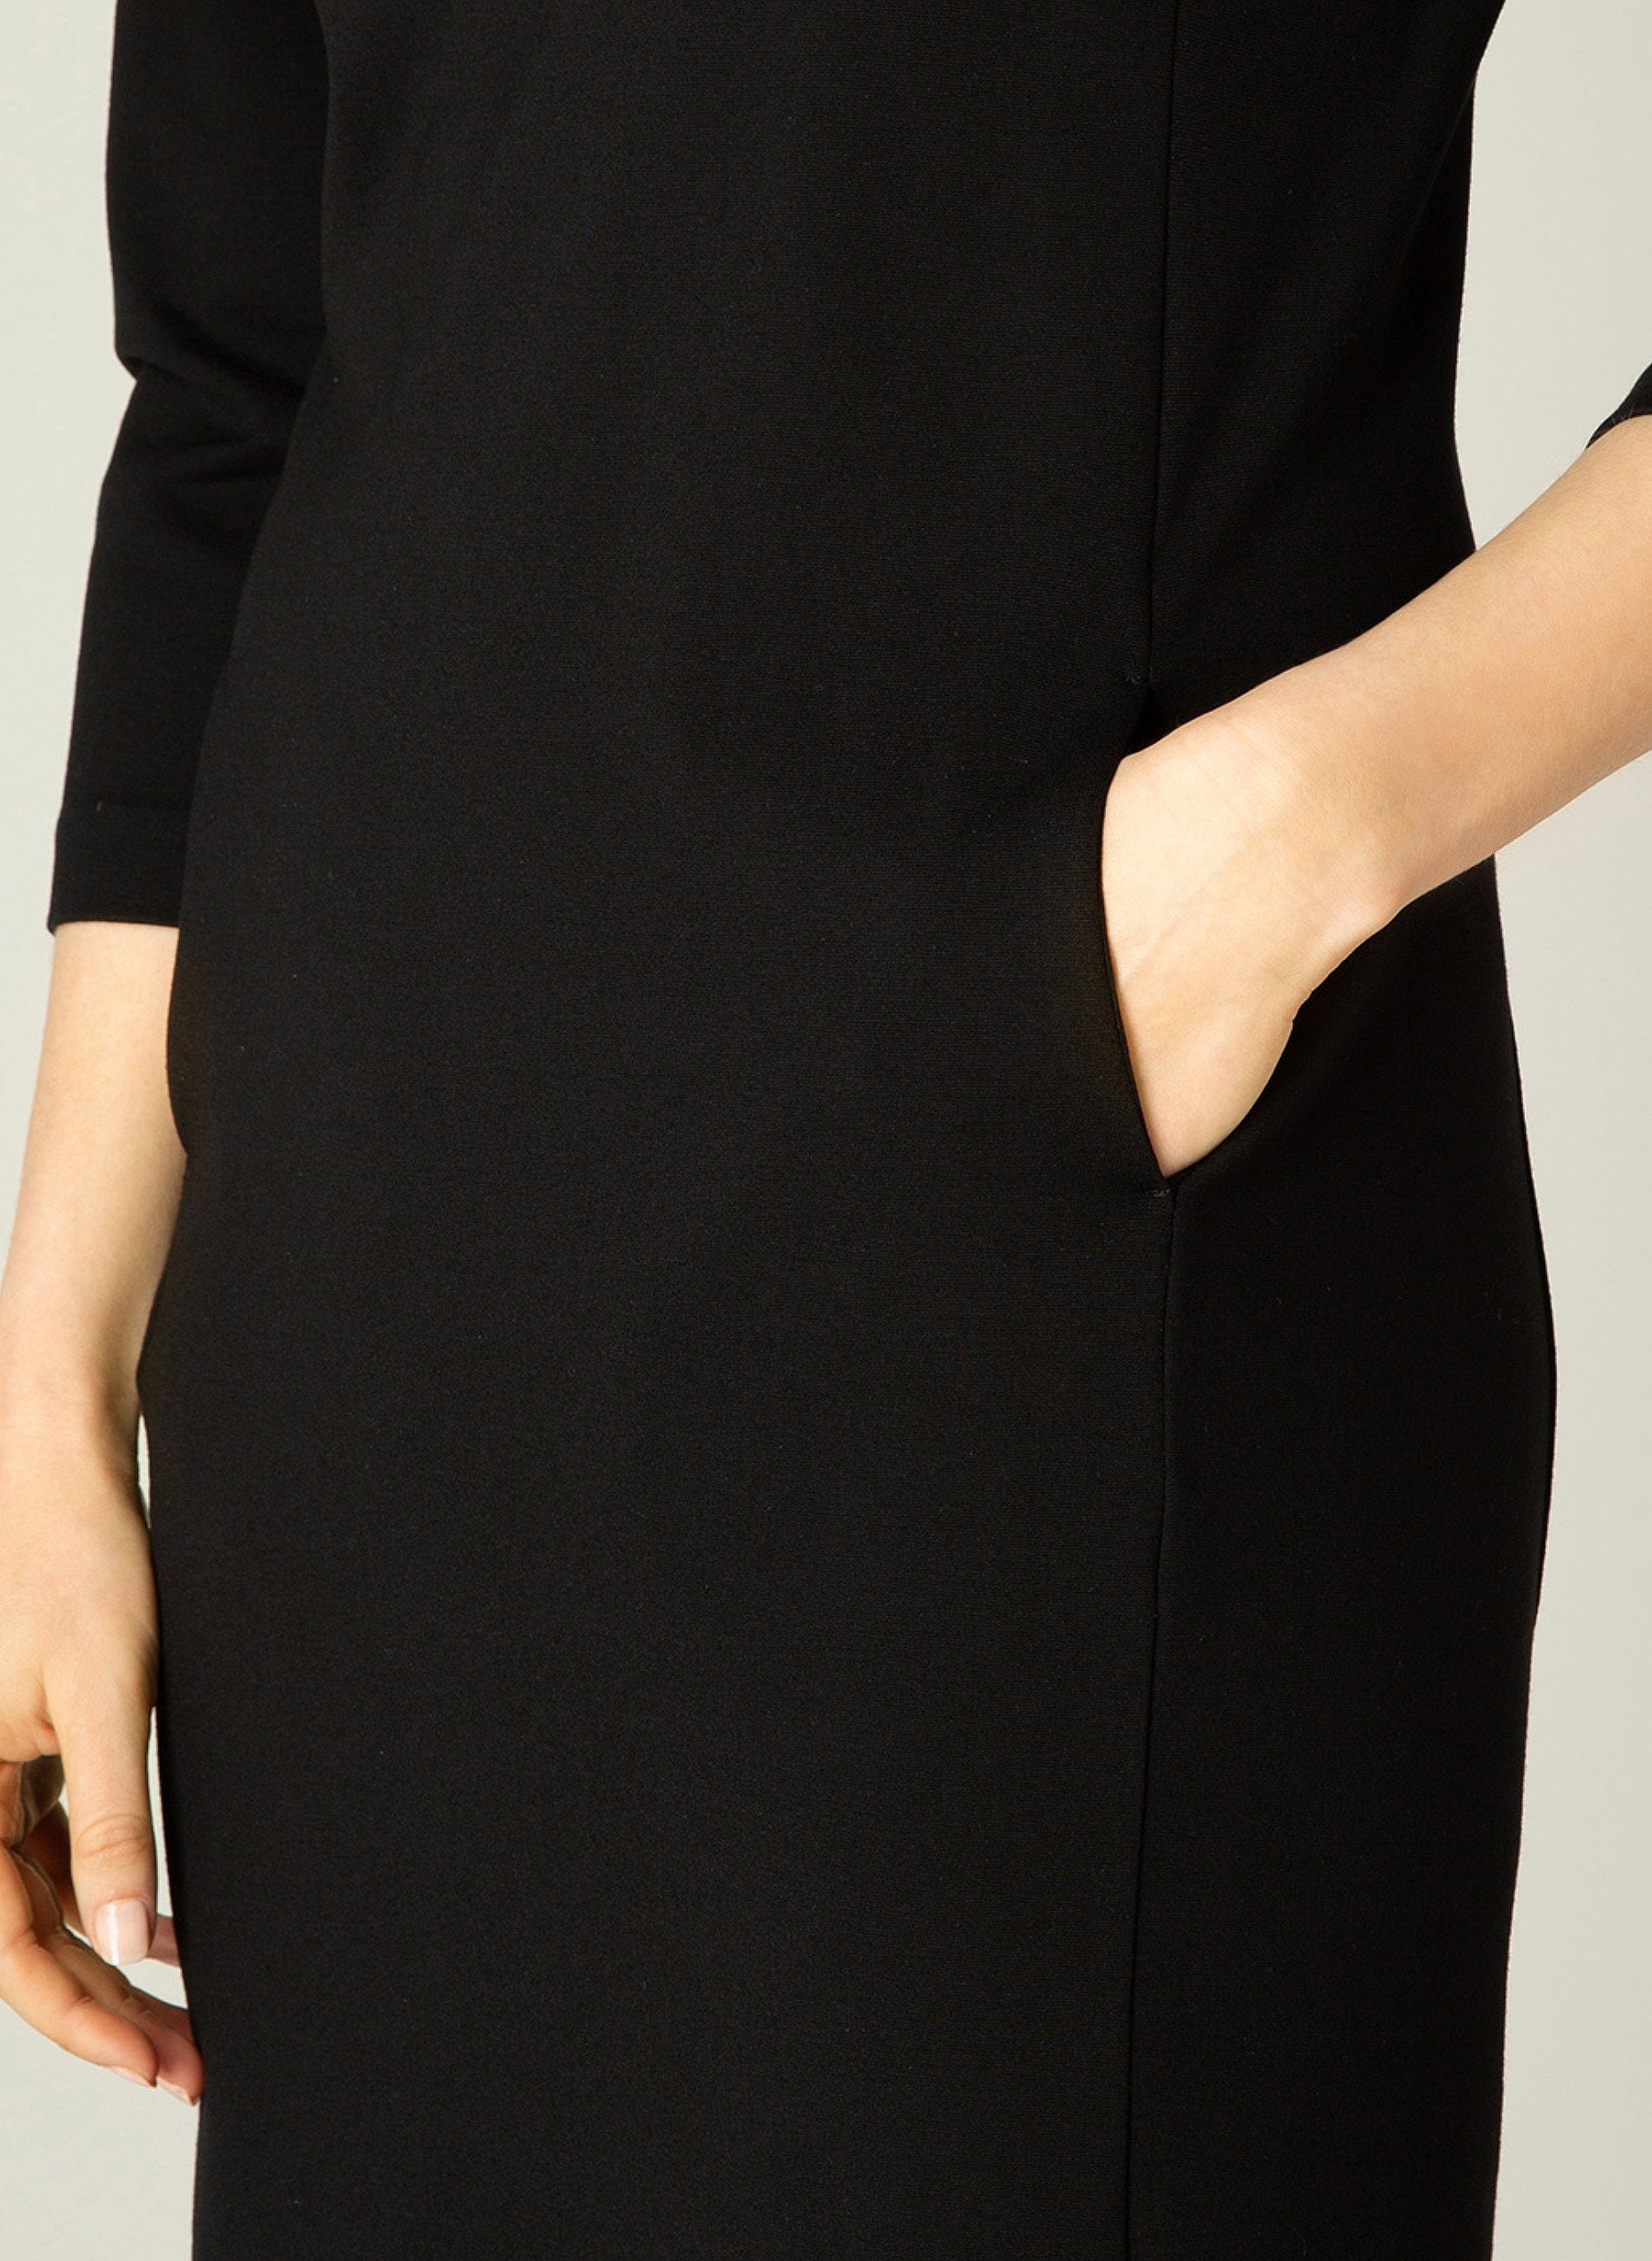 Ylona Quarter Sleeve Dress in Black Dress Base Level 